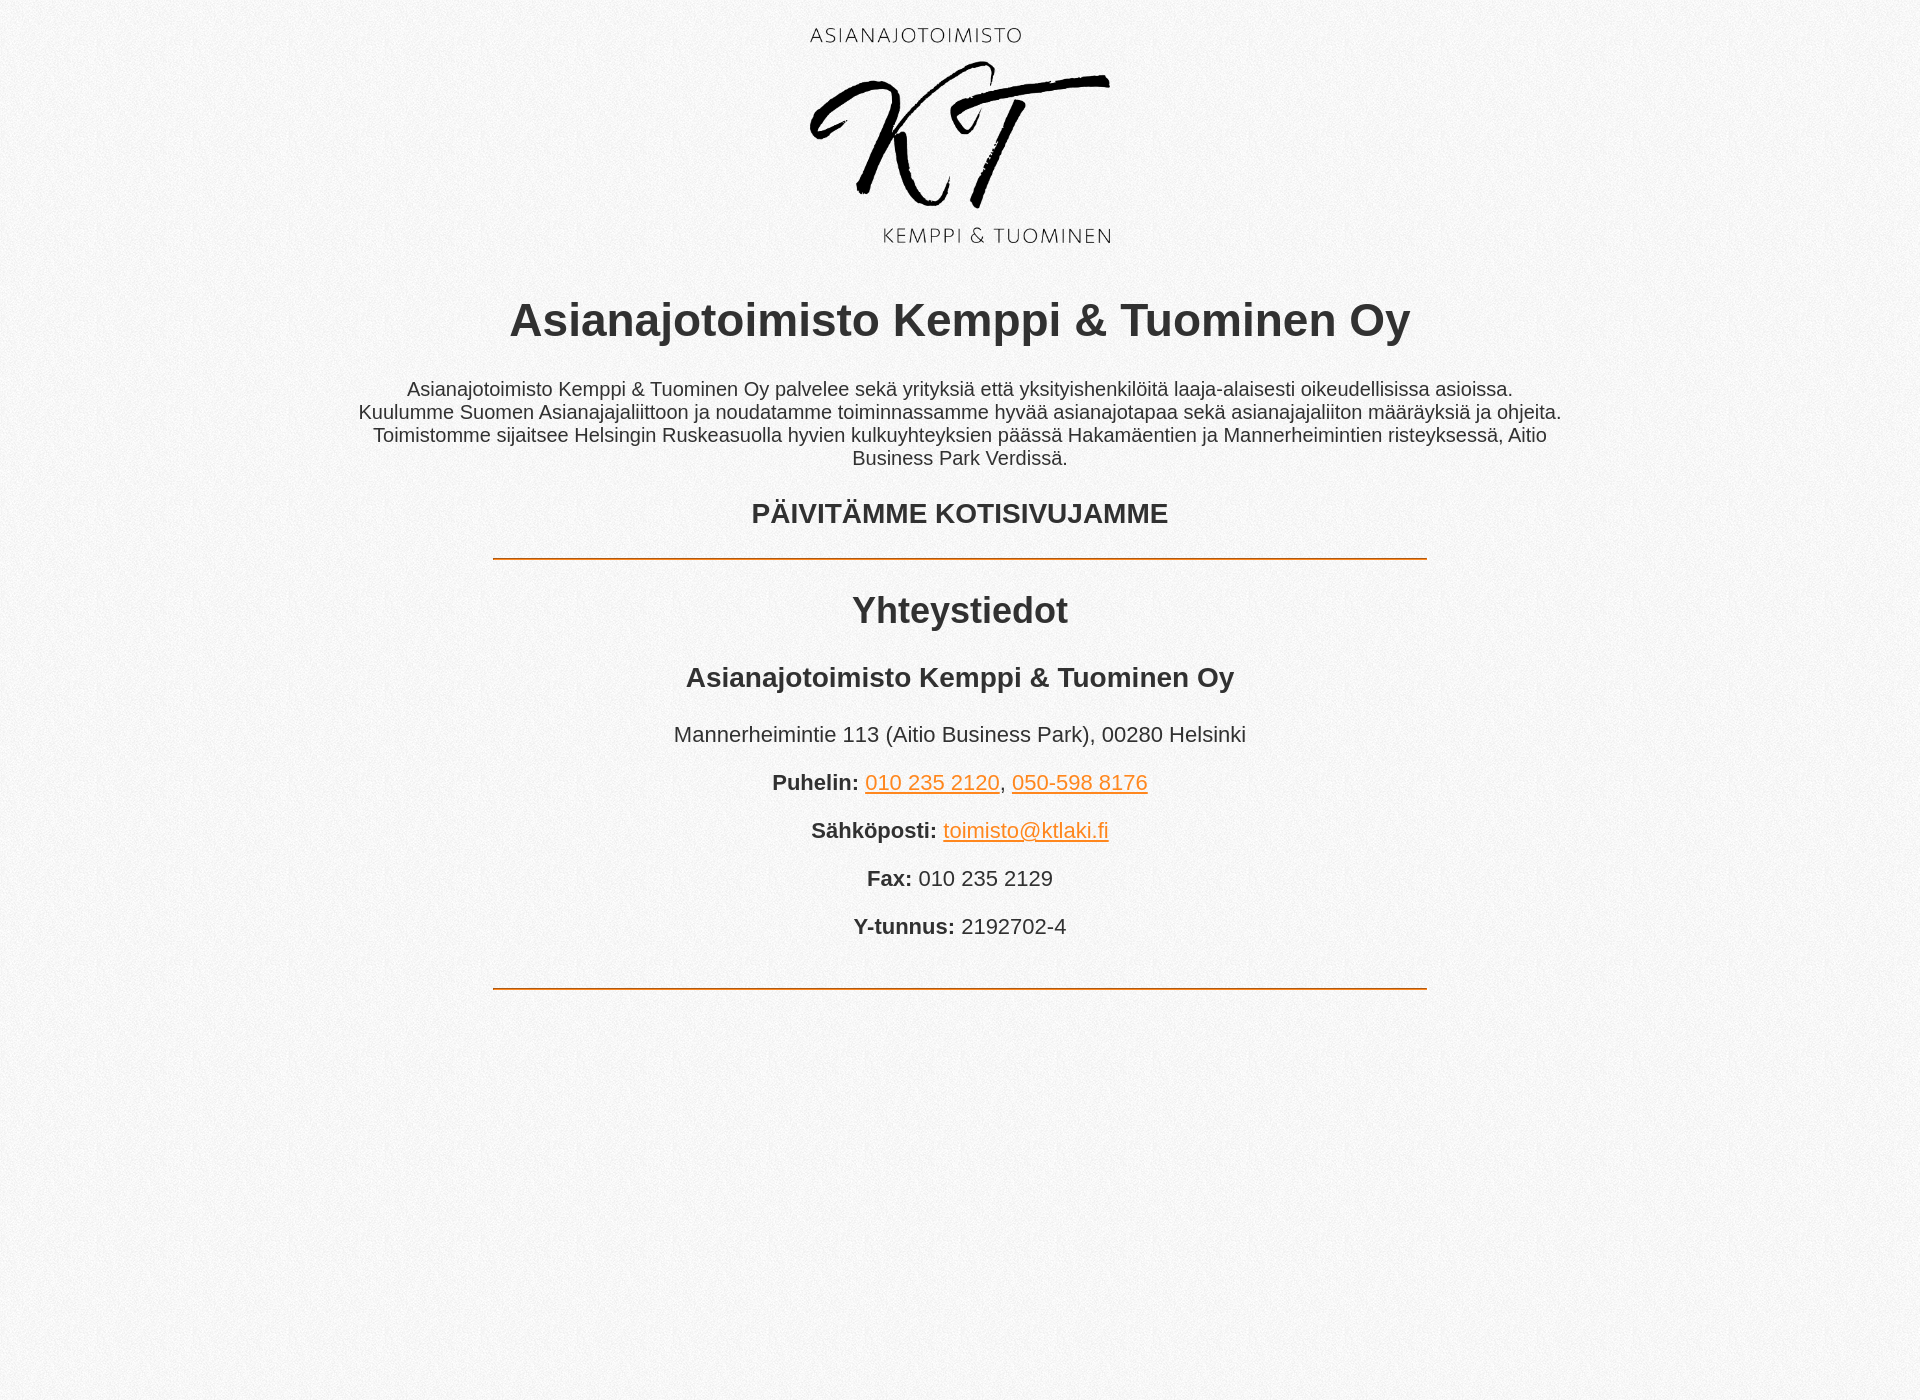 Screenshot for ktlaki.fi